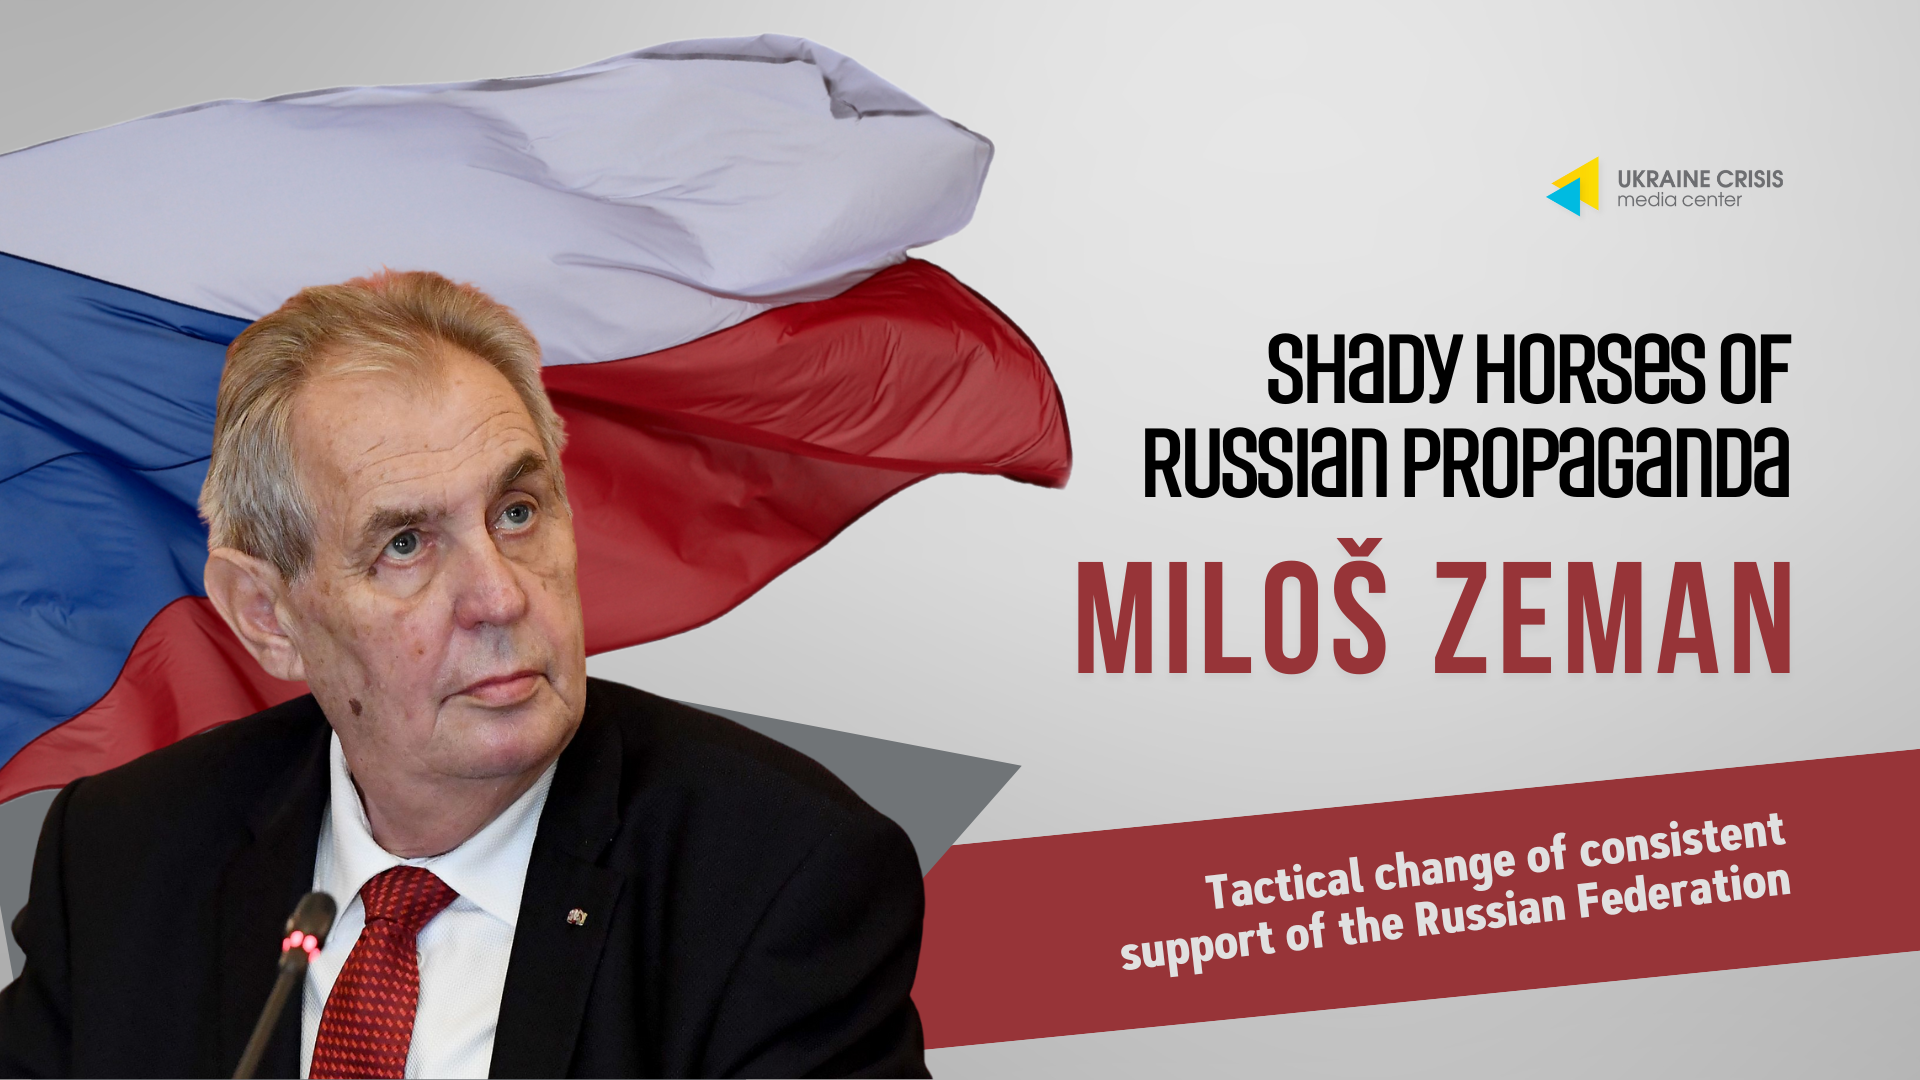 Podezřelí koně ruské propagandy, Miloš Zeman: Taktická změna pro trvalou podporu Ruské federace